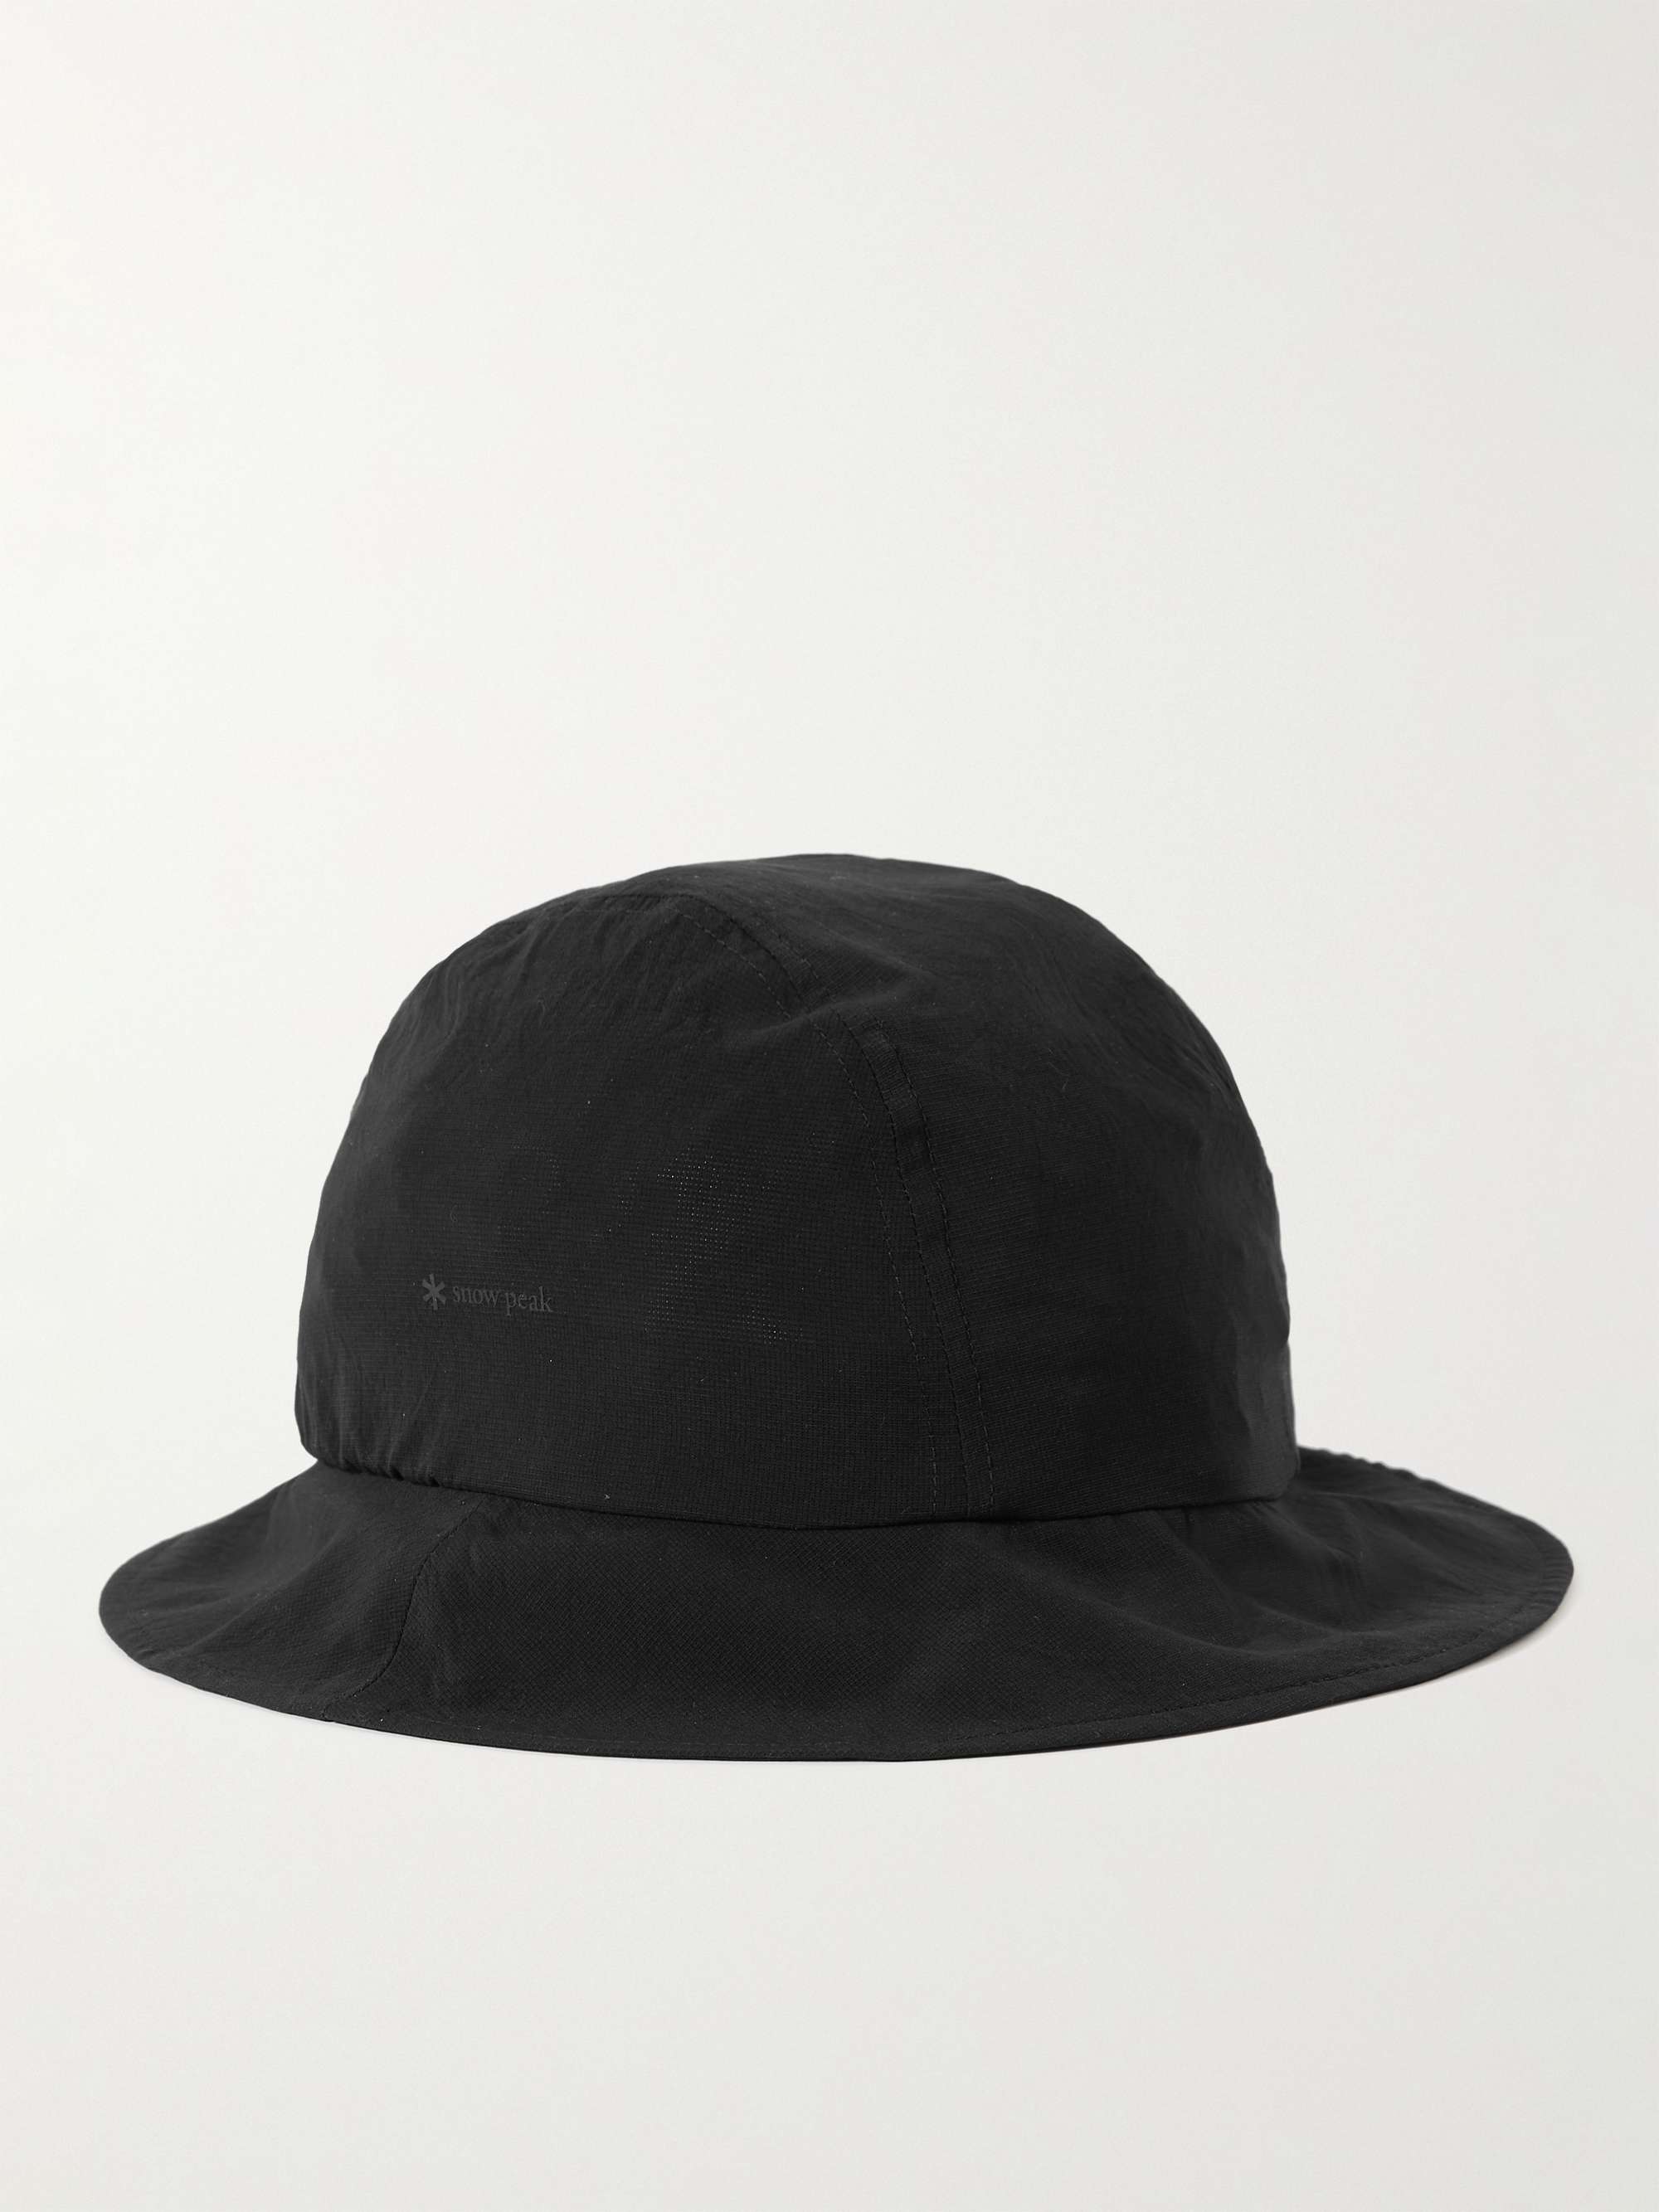 SNOW PEAK Breathable Quick Dry Shell Bucket Hat for Men | MR PORTER